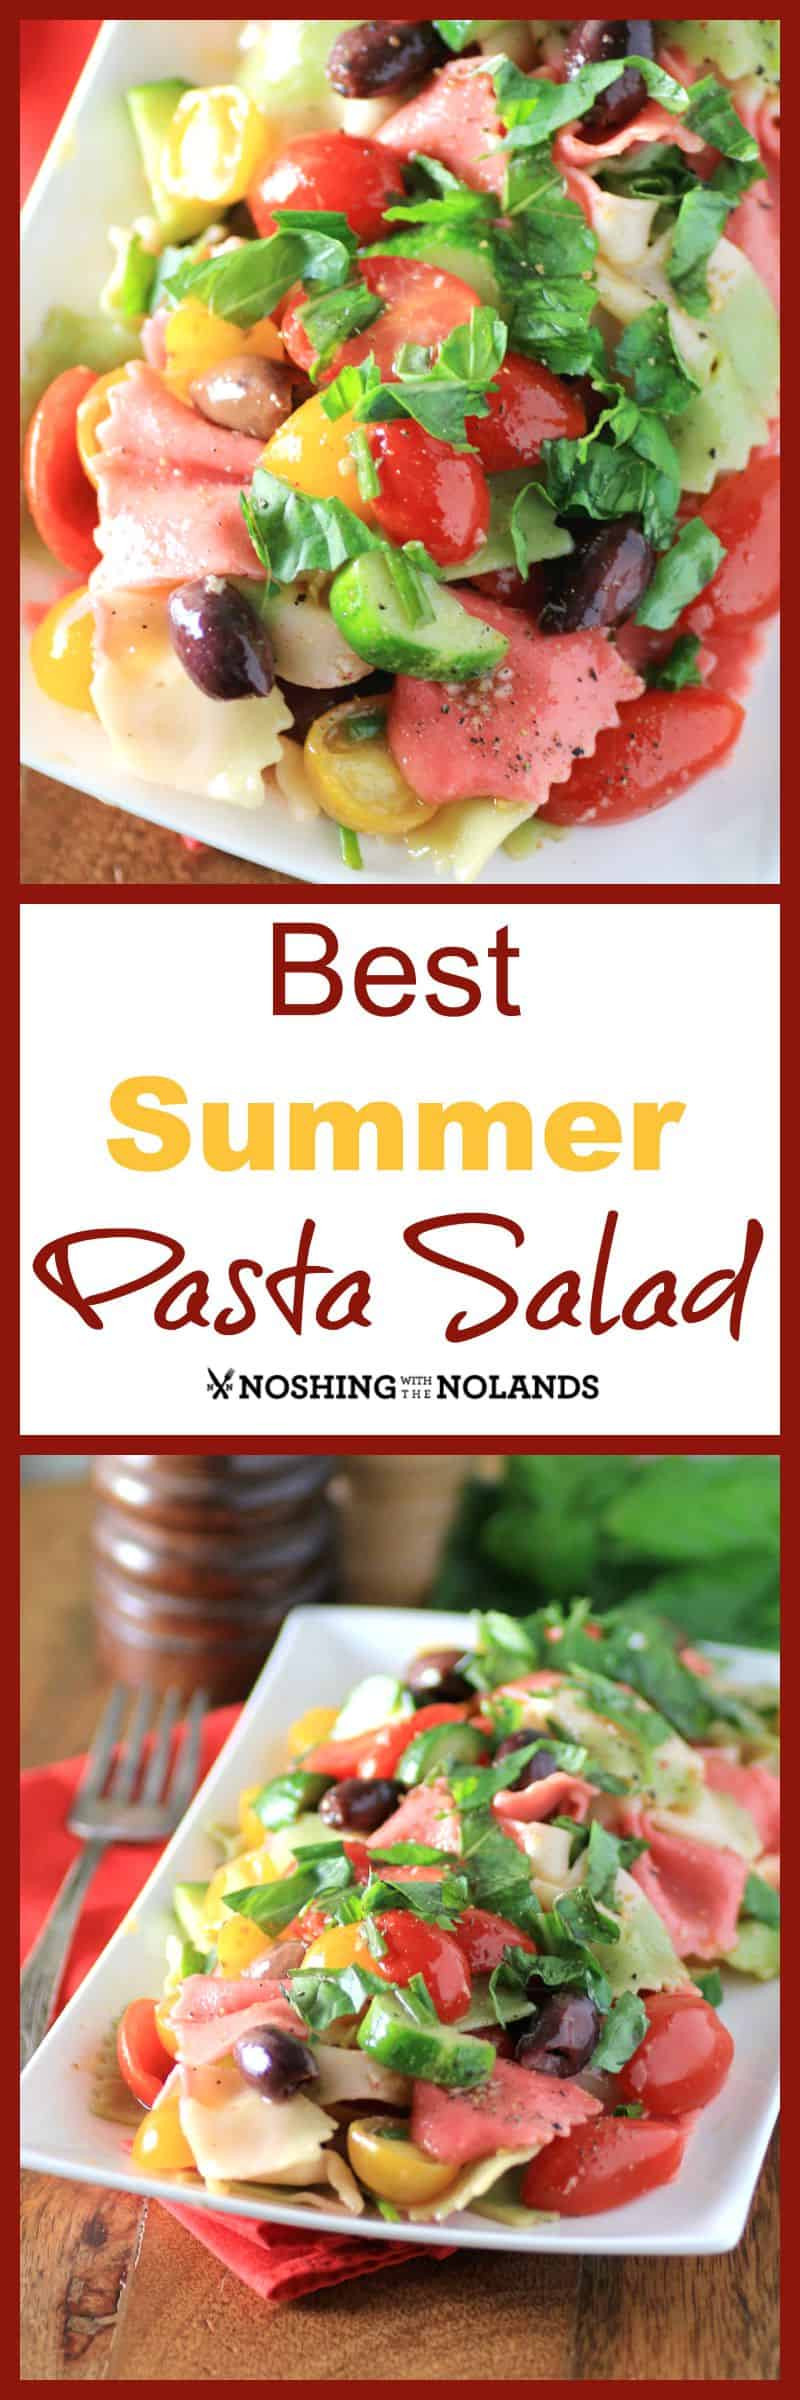 Best Summer Pasta Salad
 Best Summer Pasta Salad